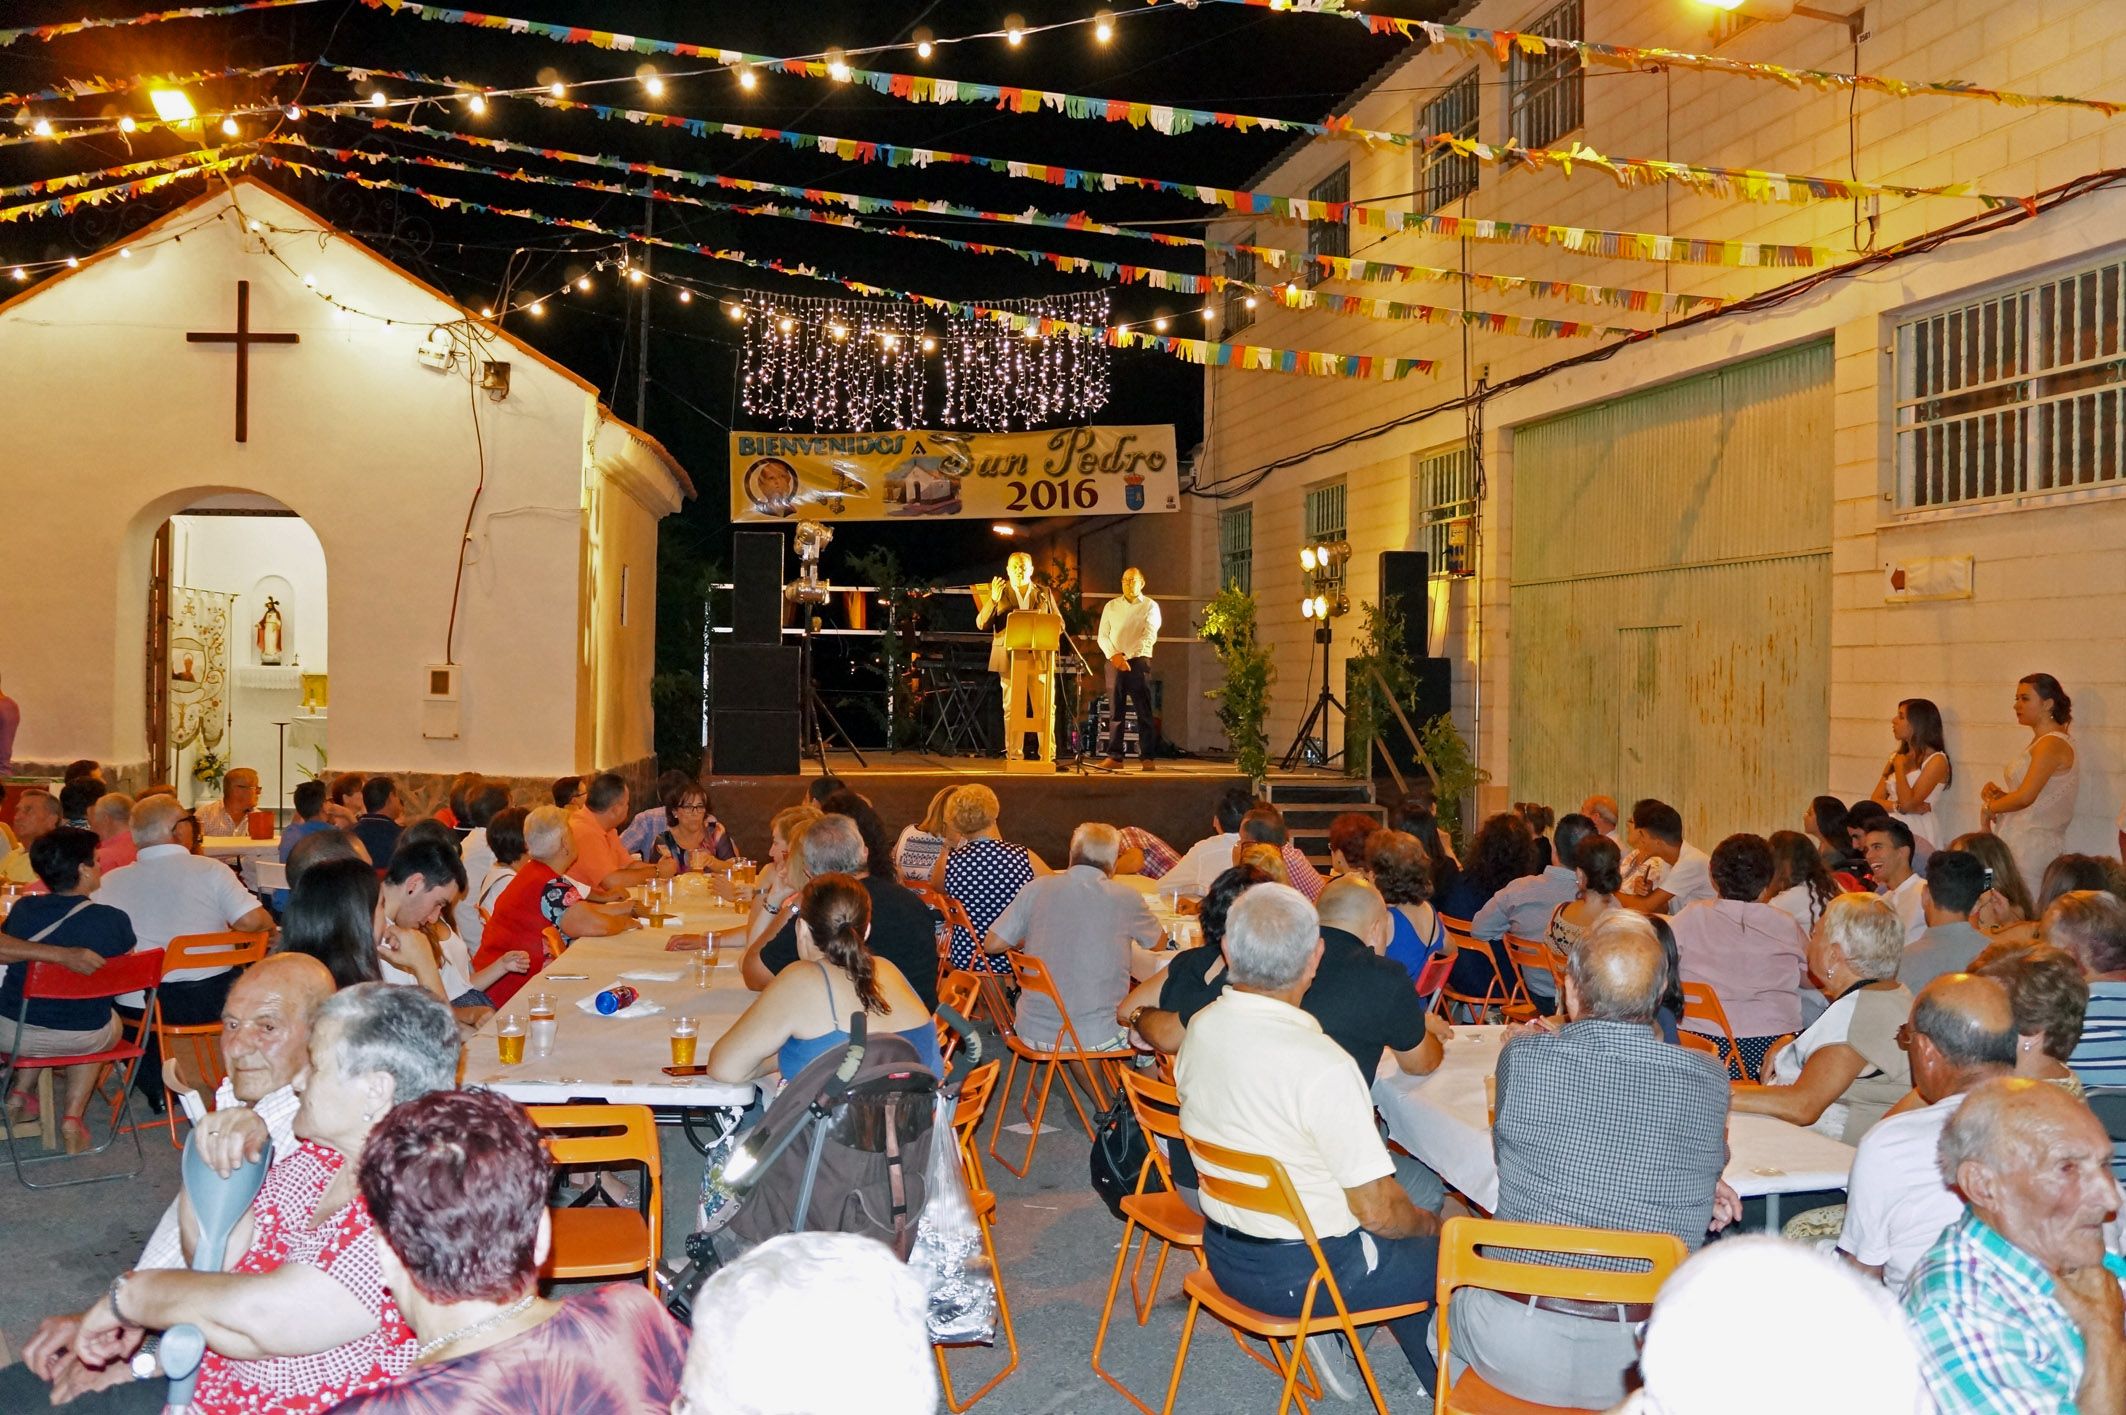 El pregón de Rafael Fuentes da por iniciadas las fiestas del barrio torreño de San Pedro2